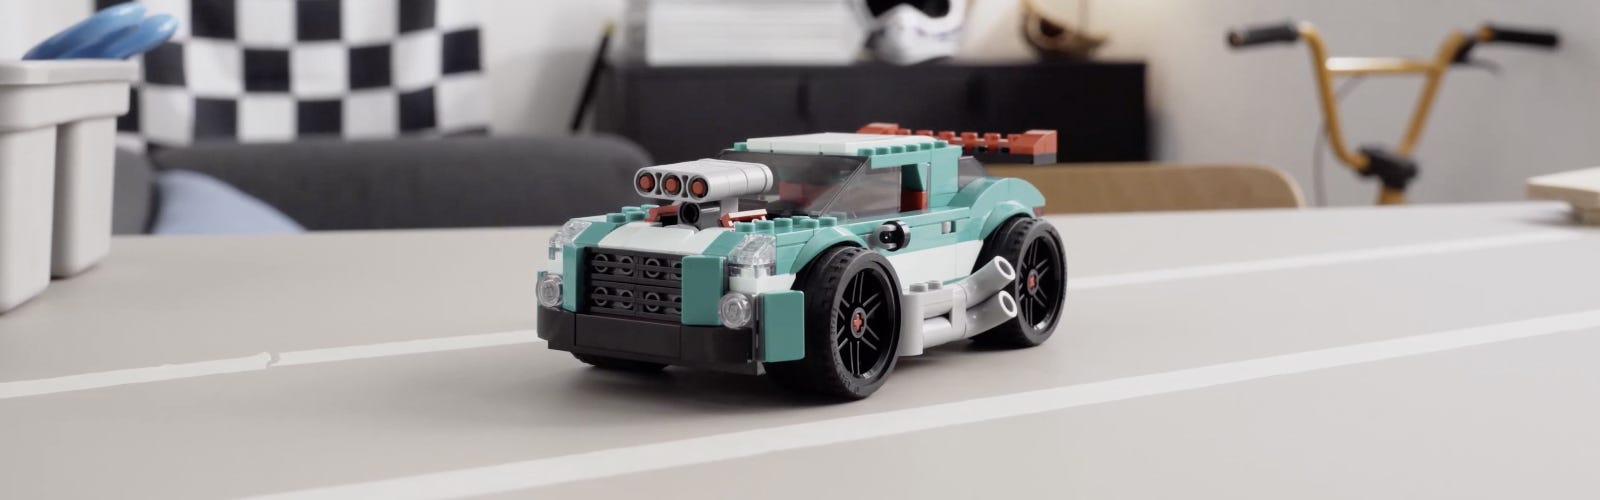 Lego Technic : top 8 des meilleurs sets à choisir